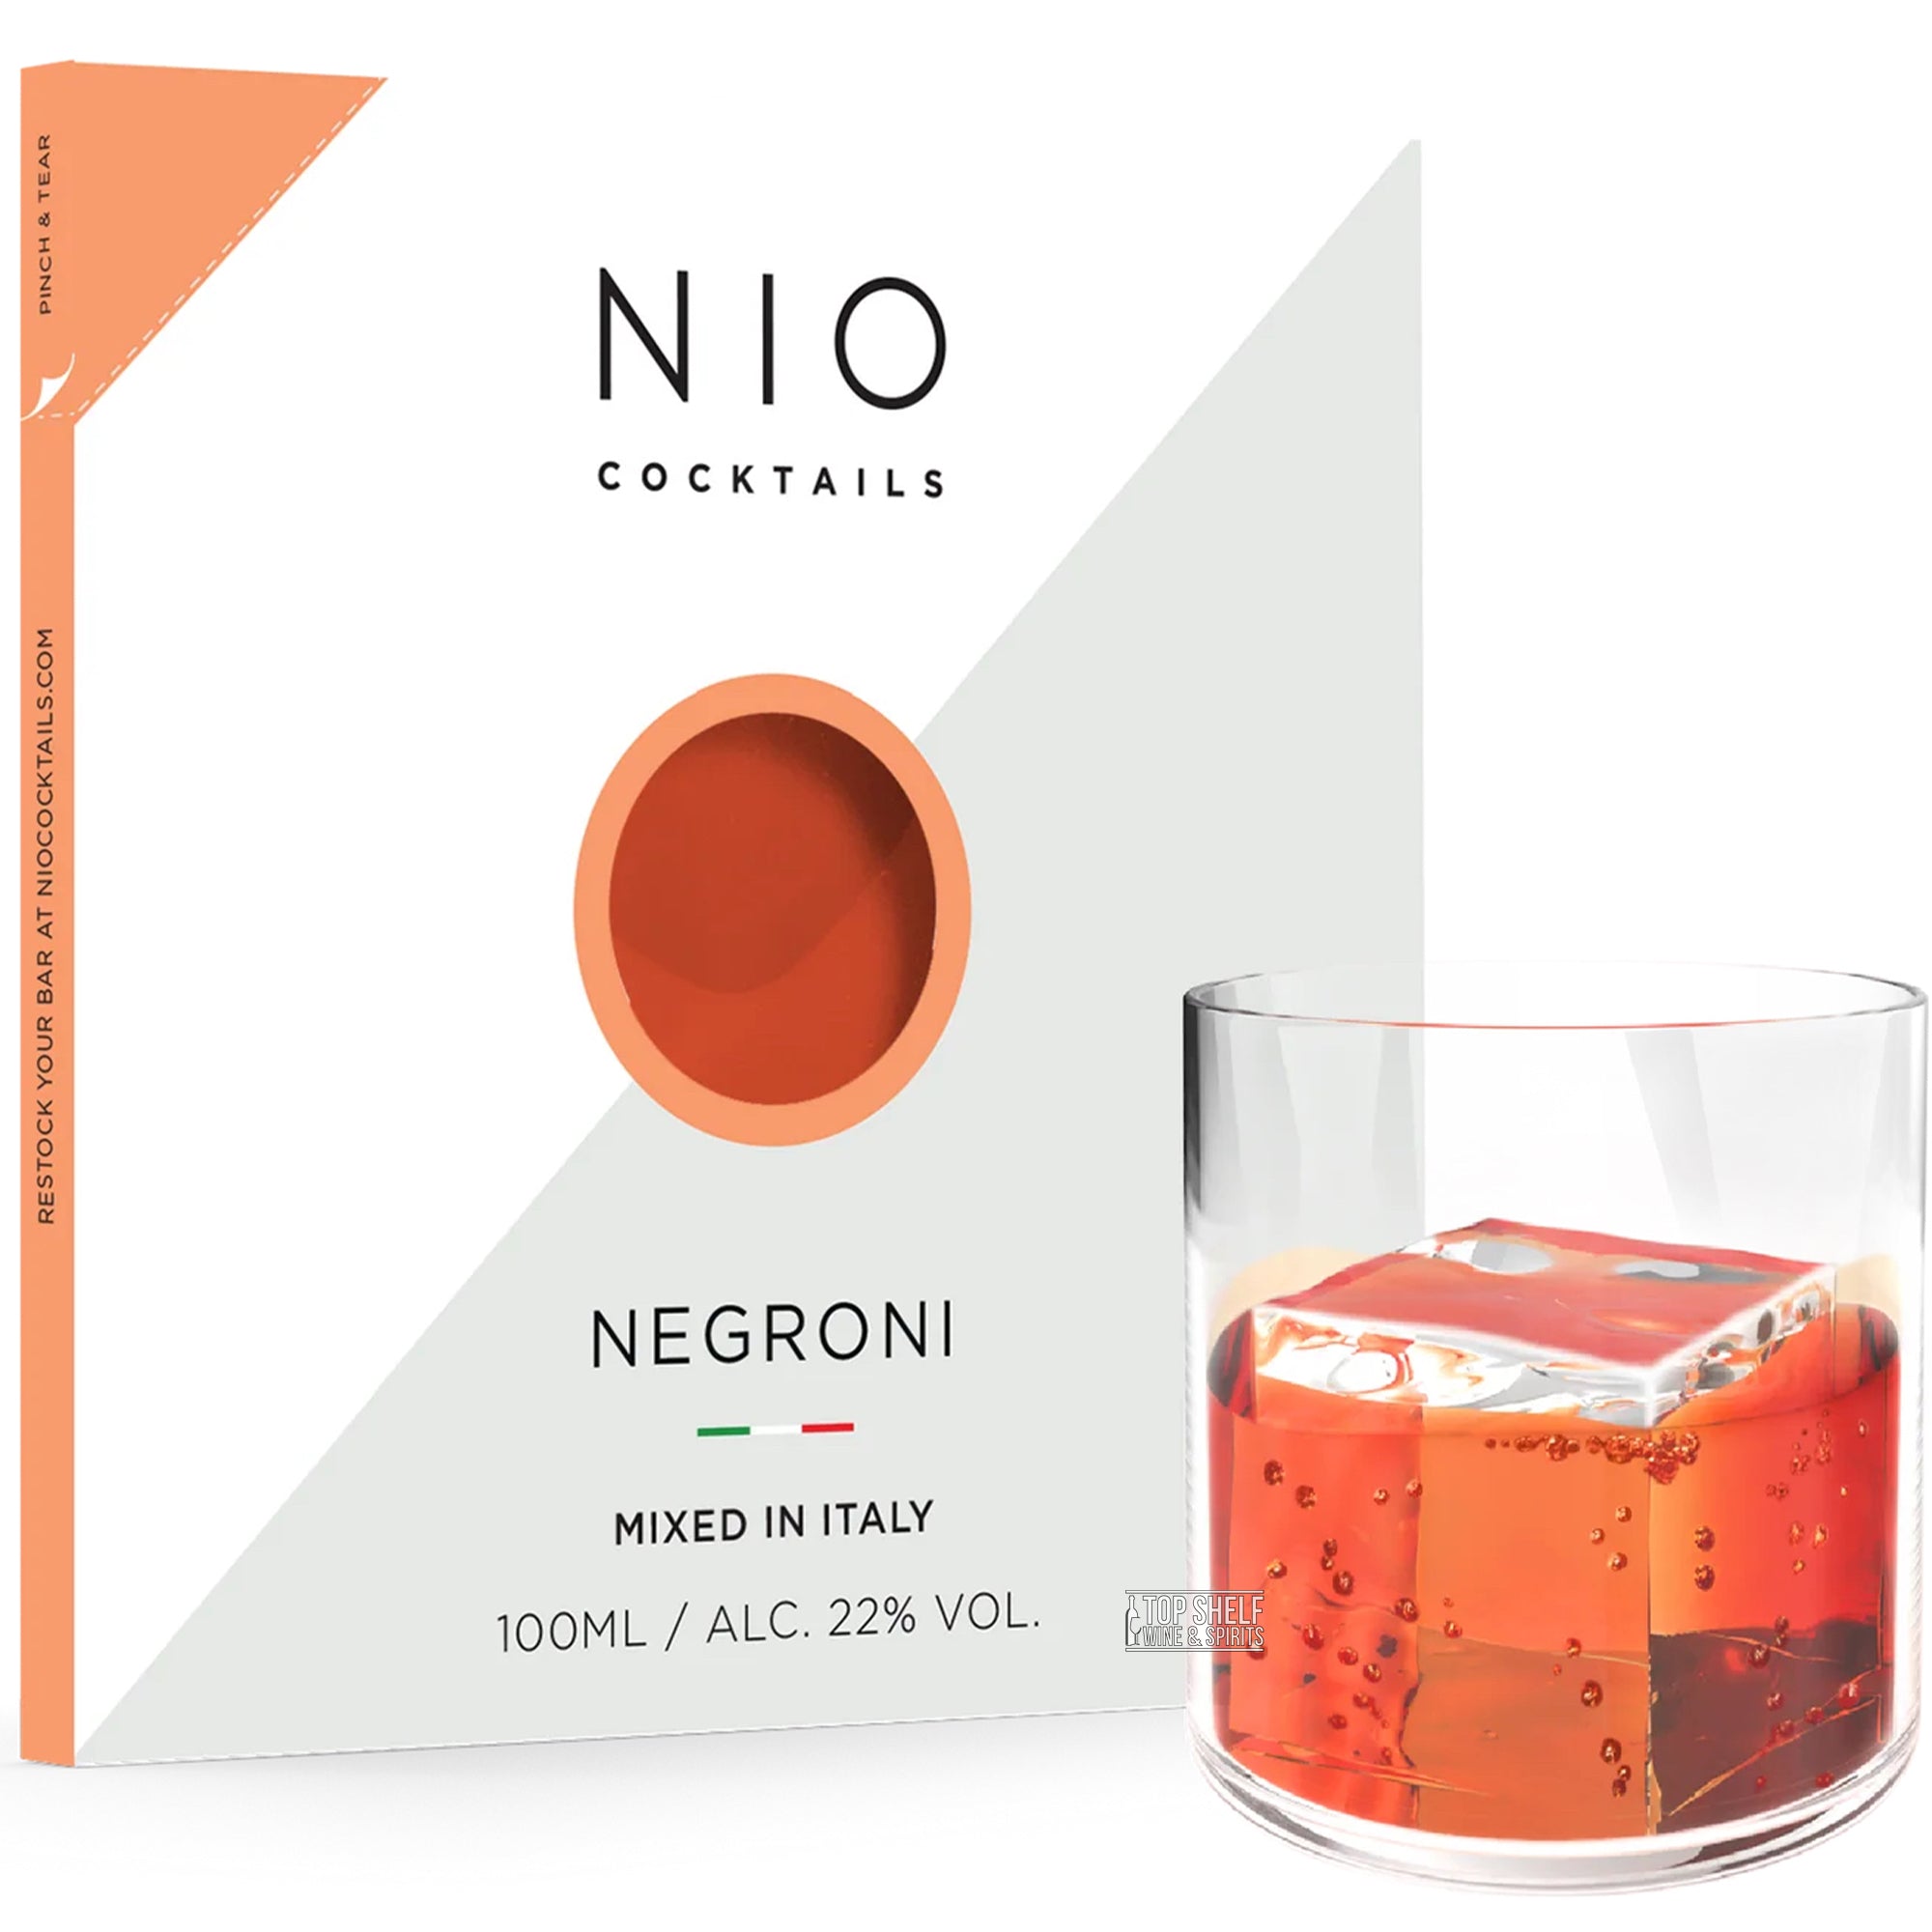 Nio Negroni Premixed Cocktail